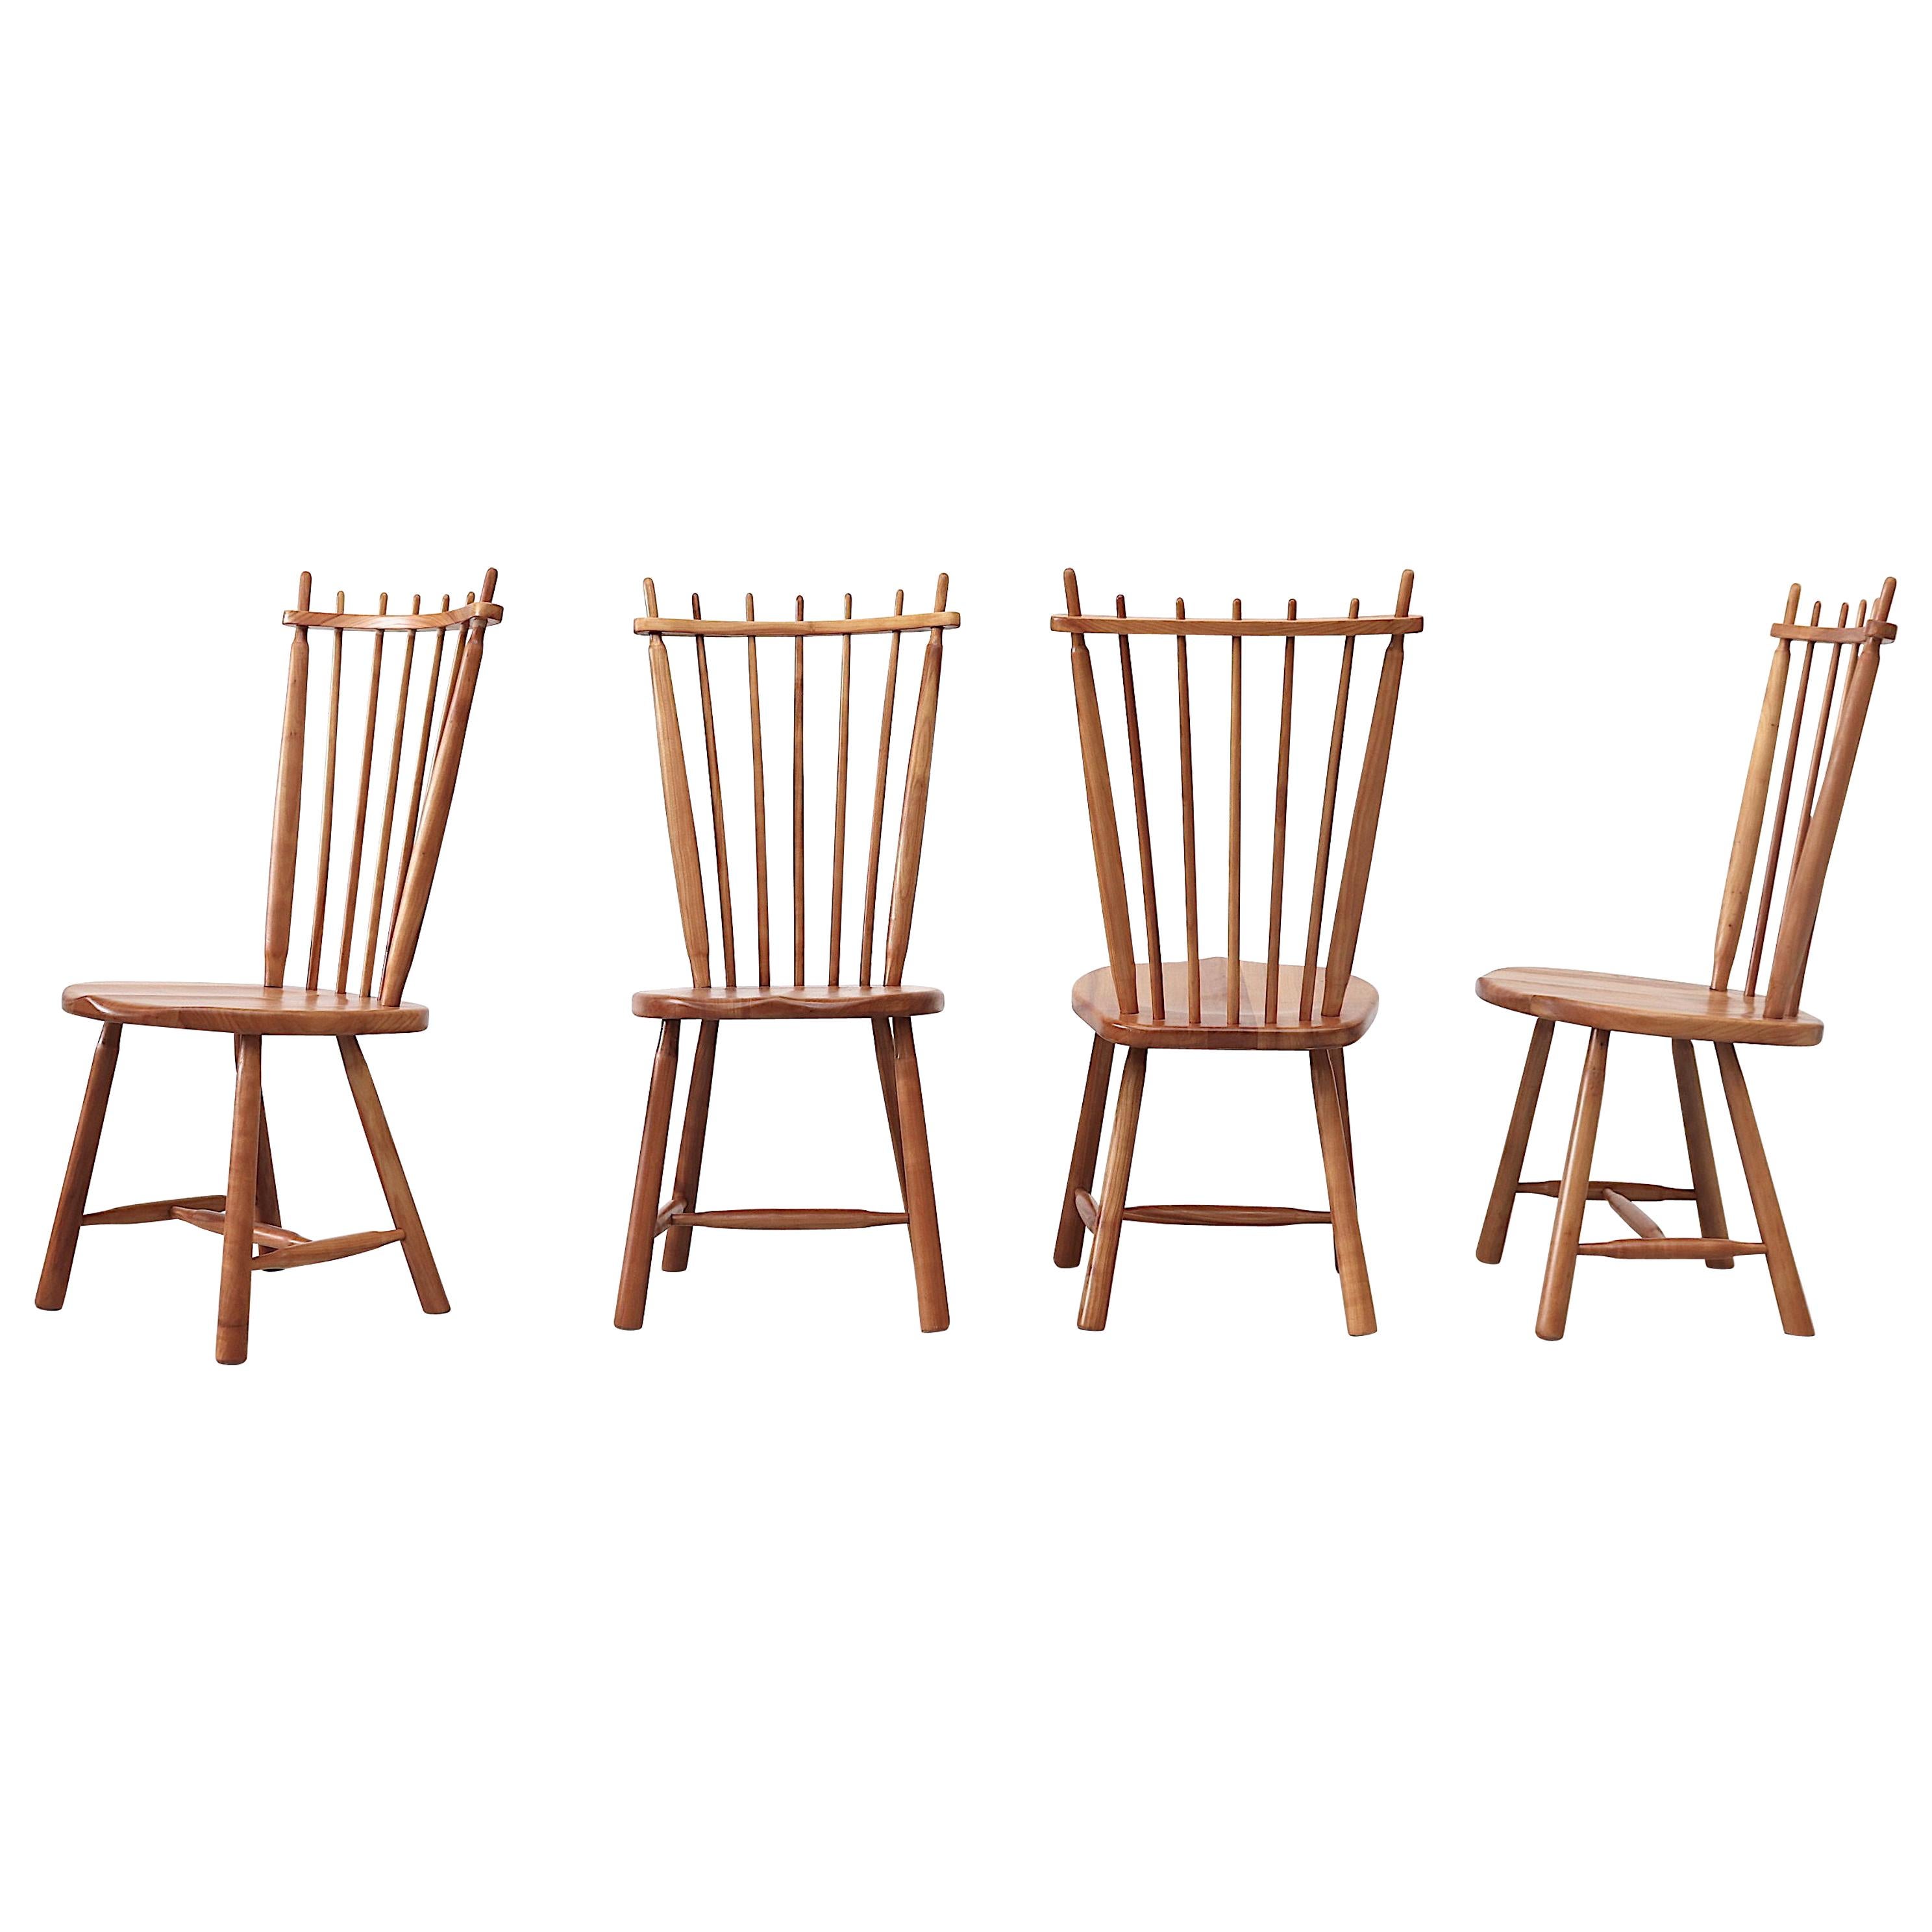 Satz von 4 Stühlen mit Spindelrücken im Tapiovaara-Stil